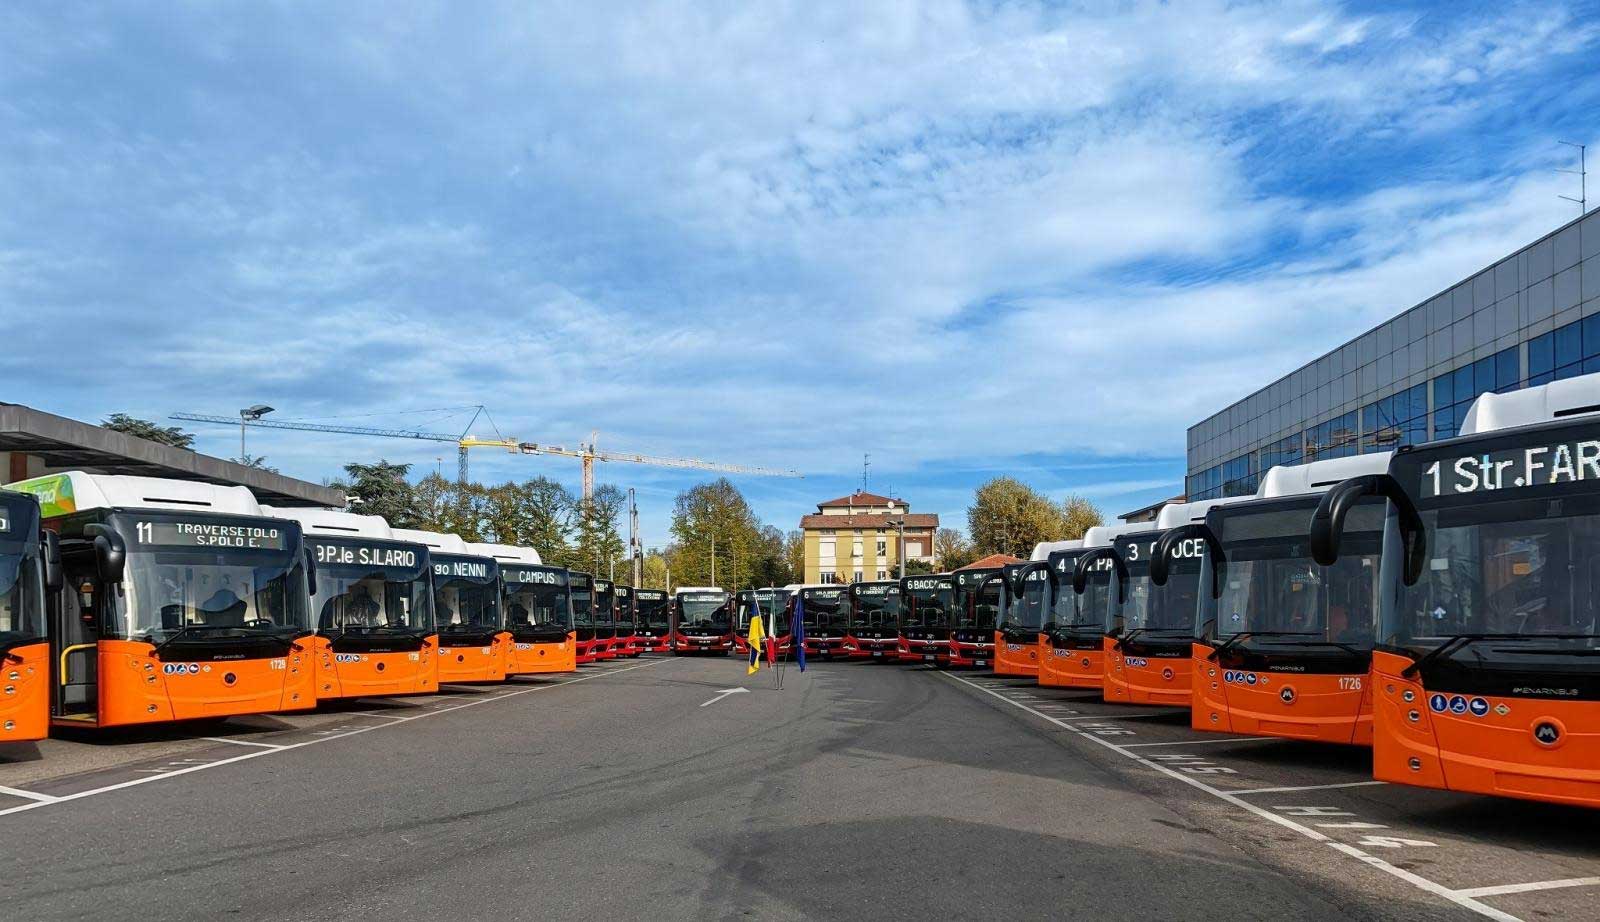 Italie : Parme met en service 25 nouveaux bus GNV